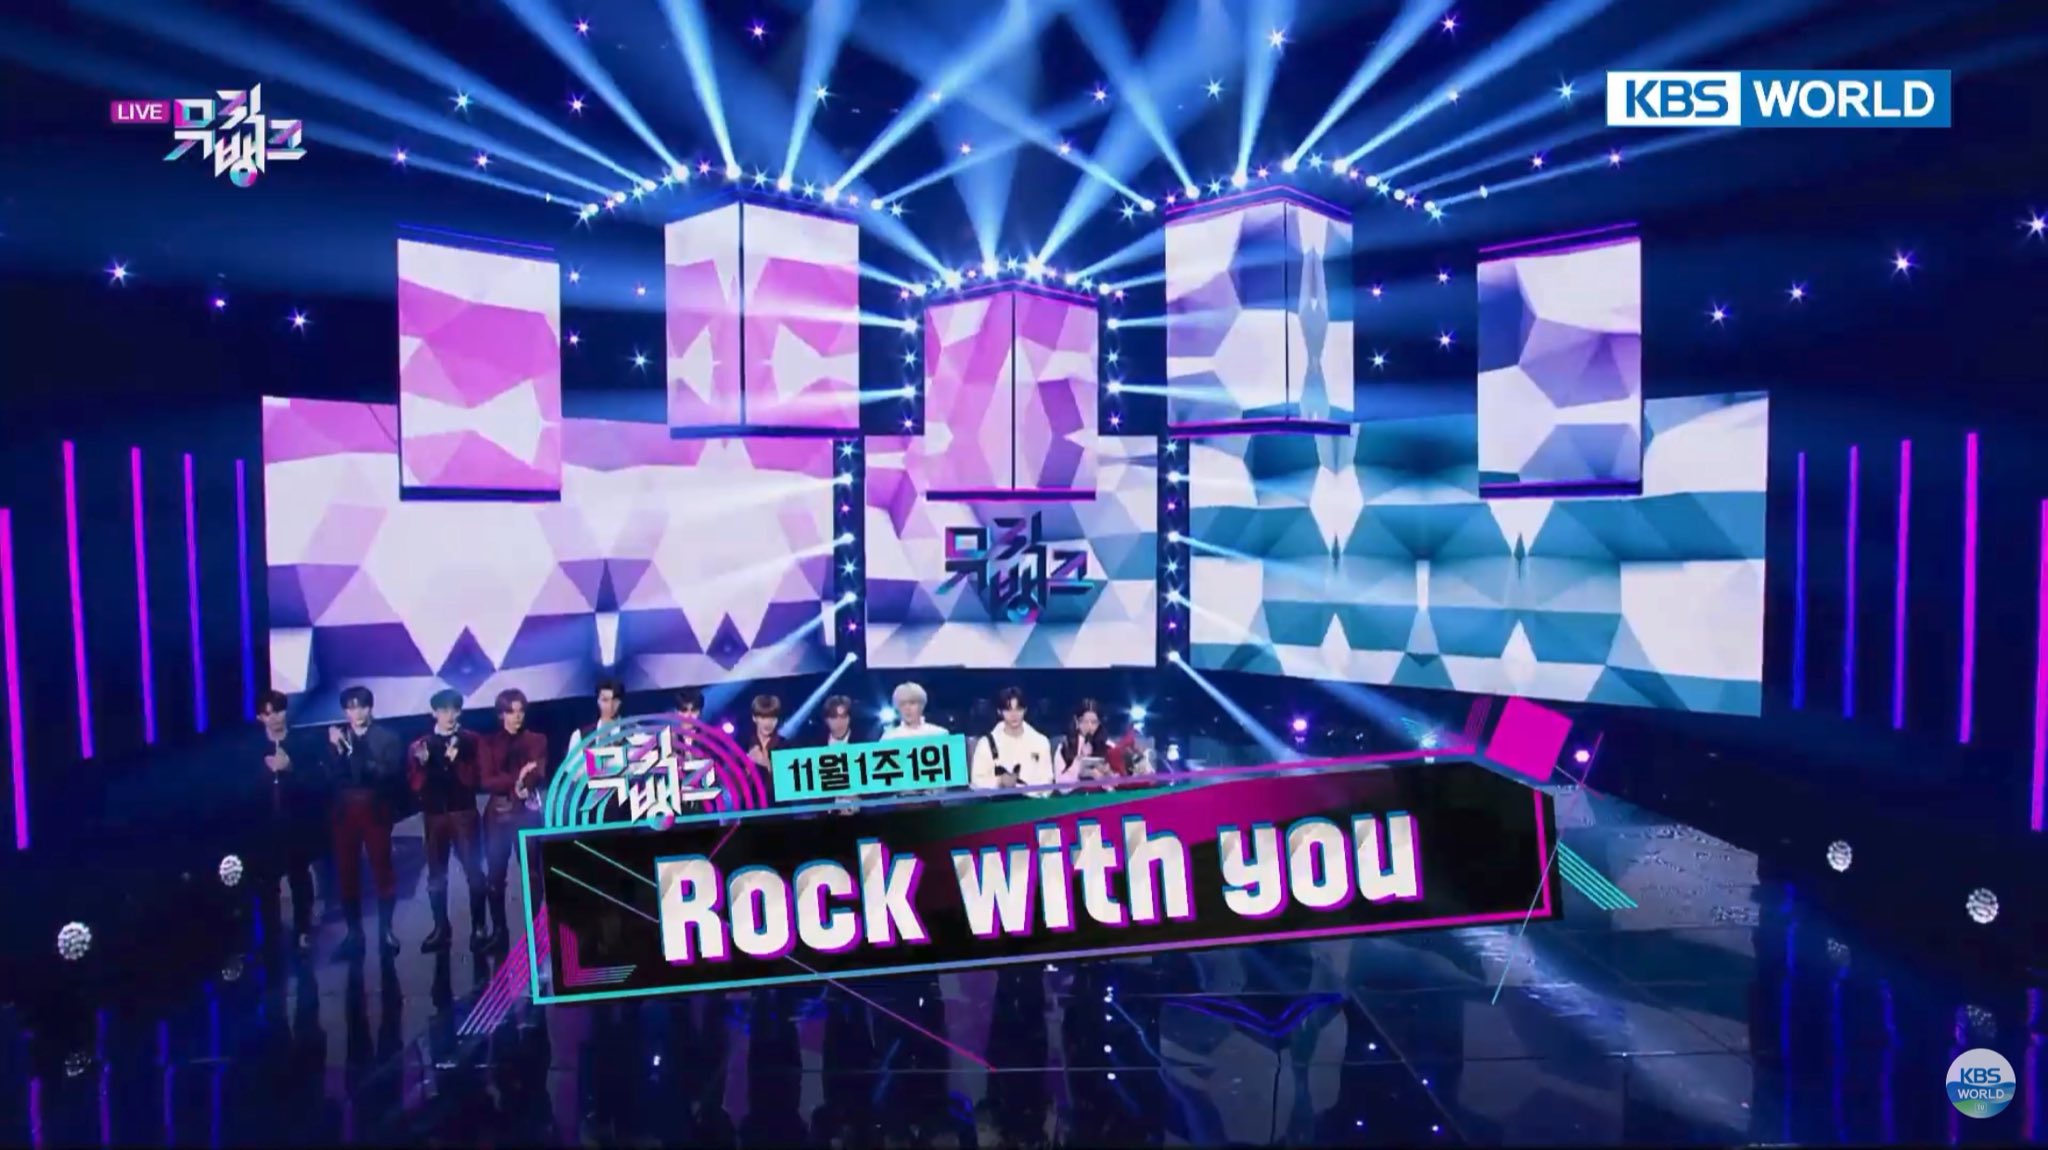 Lagu Rock With You - Seventeen yang Menang Penghargaan Music Bank, Ini Liriknya!